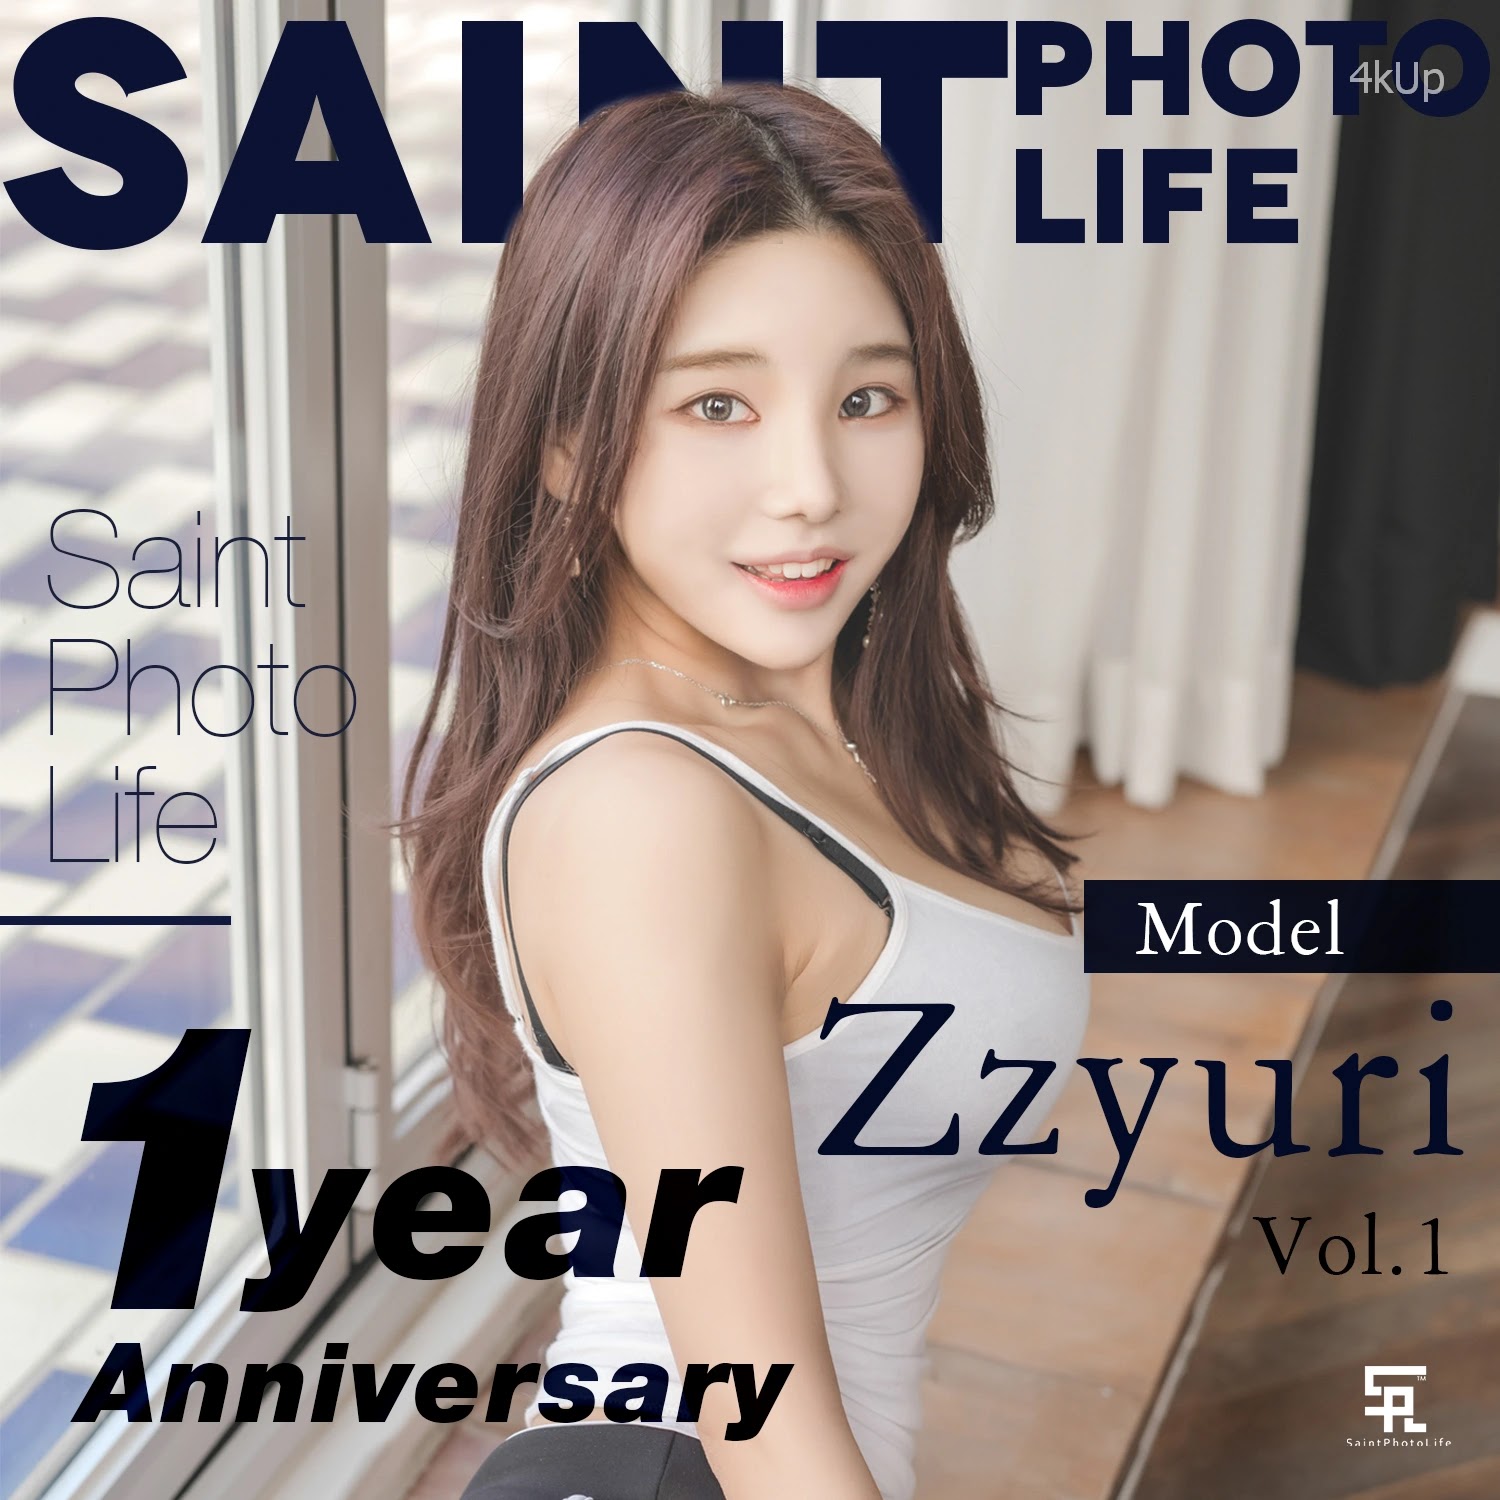 SAINT Photolife - Zzyuri (쮸리) Vol.1 & 1 Year Anniversary